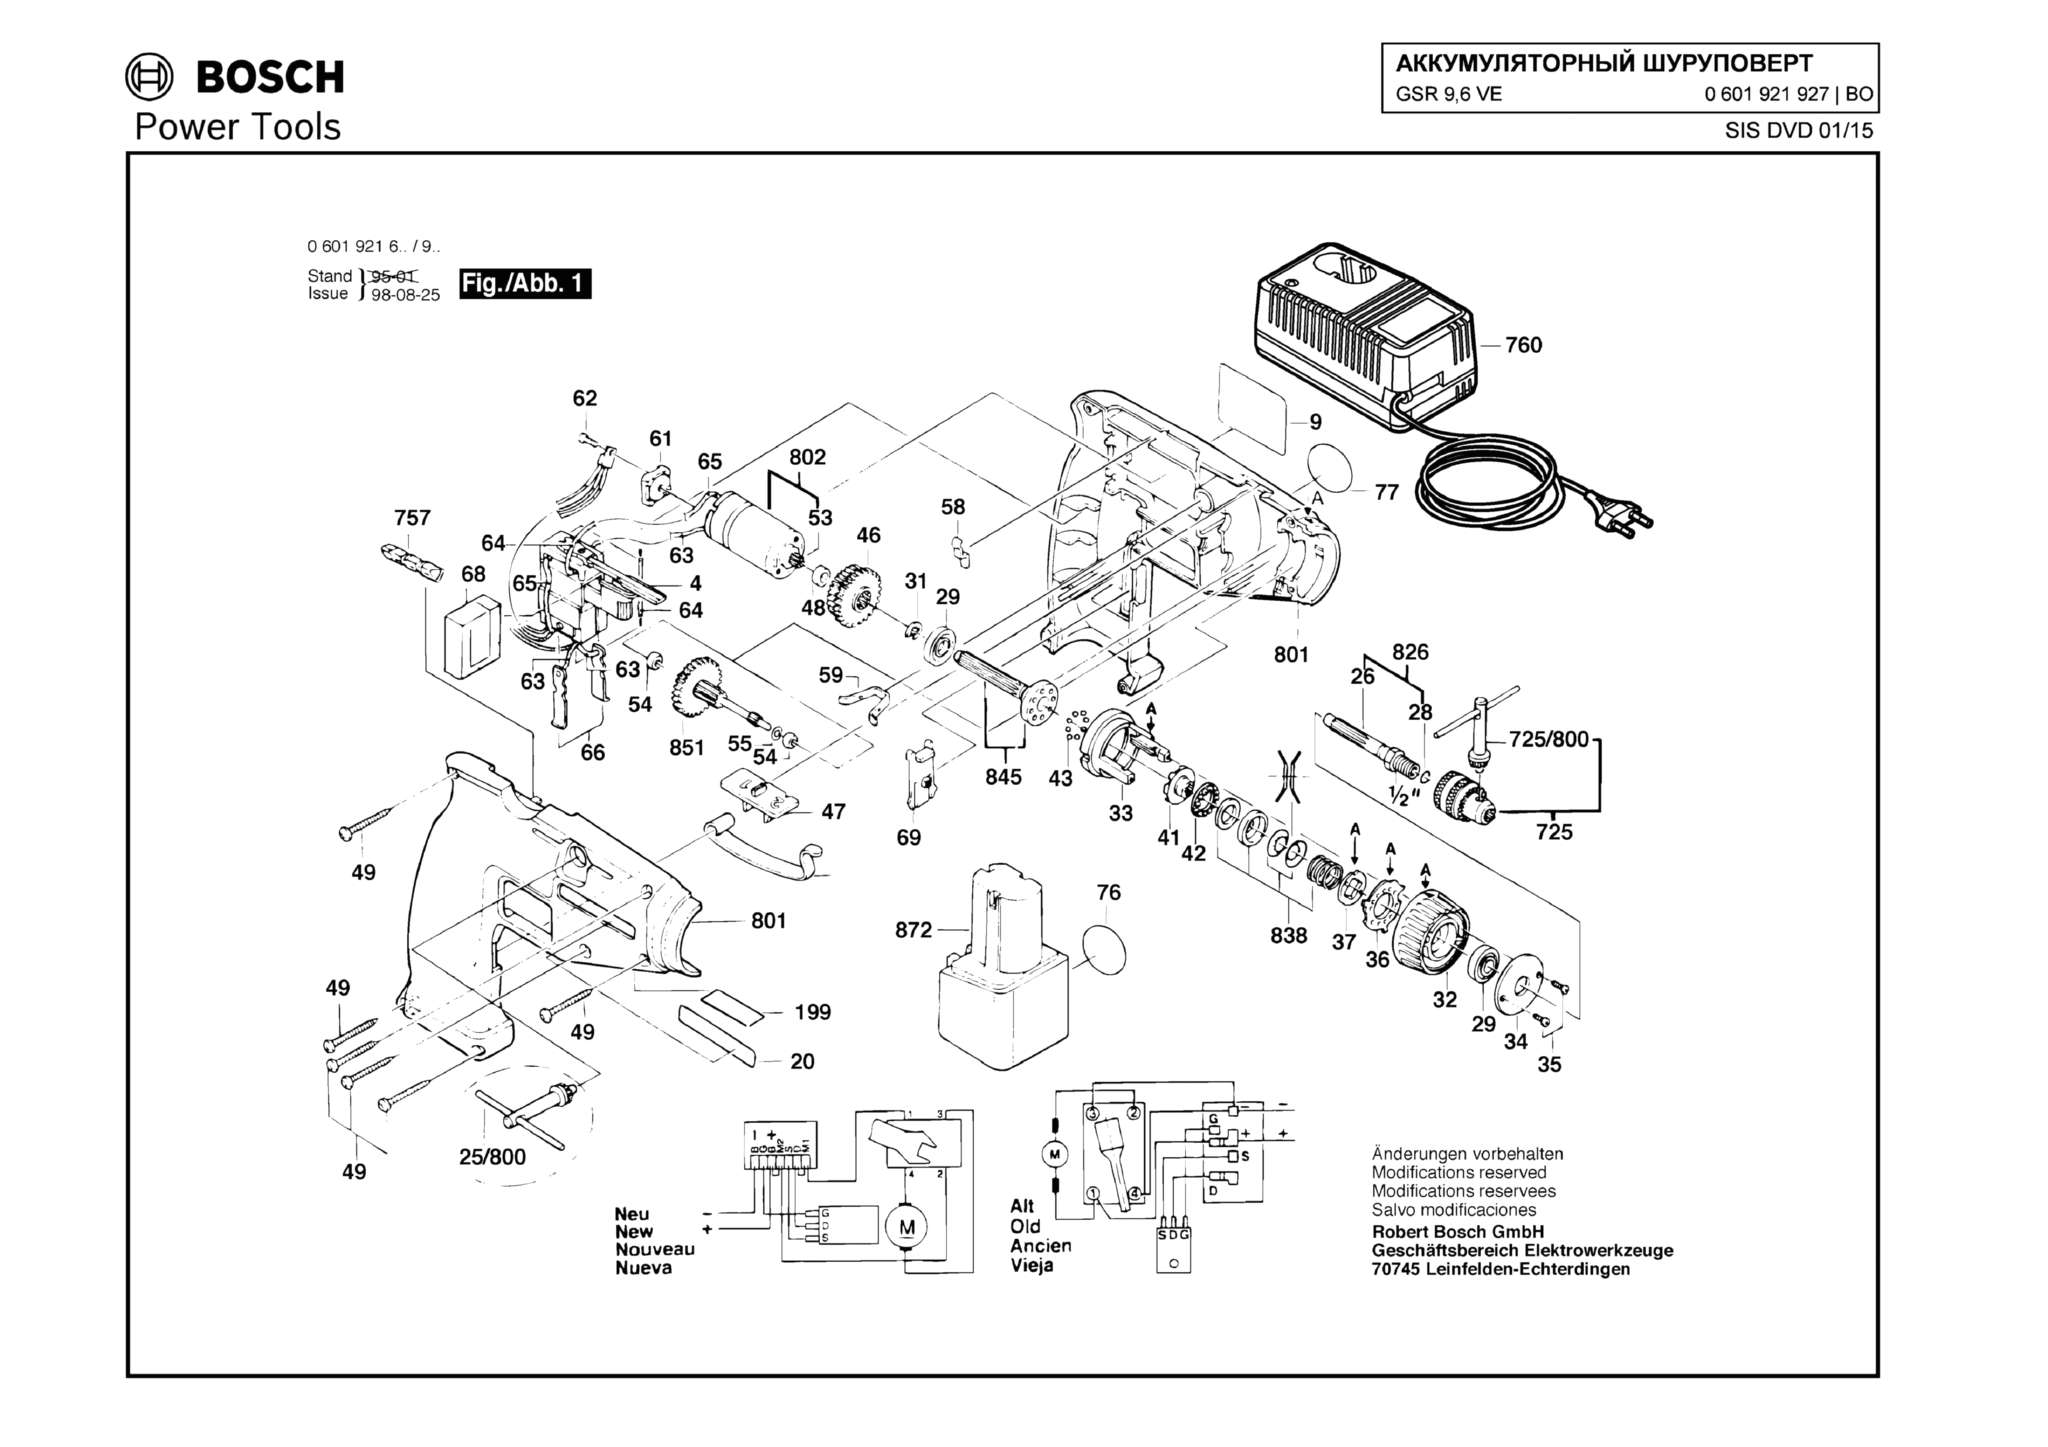 Запчасти, схема и деталировка Bosch GSR 9,6 VE (ТИП 0601921927)